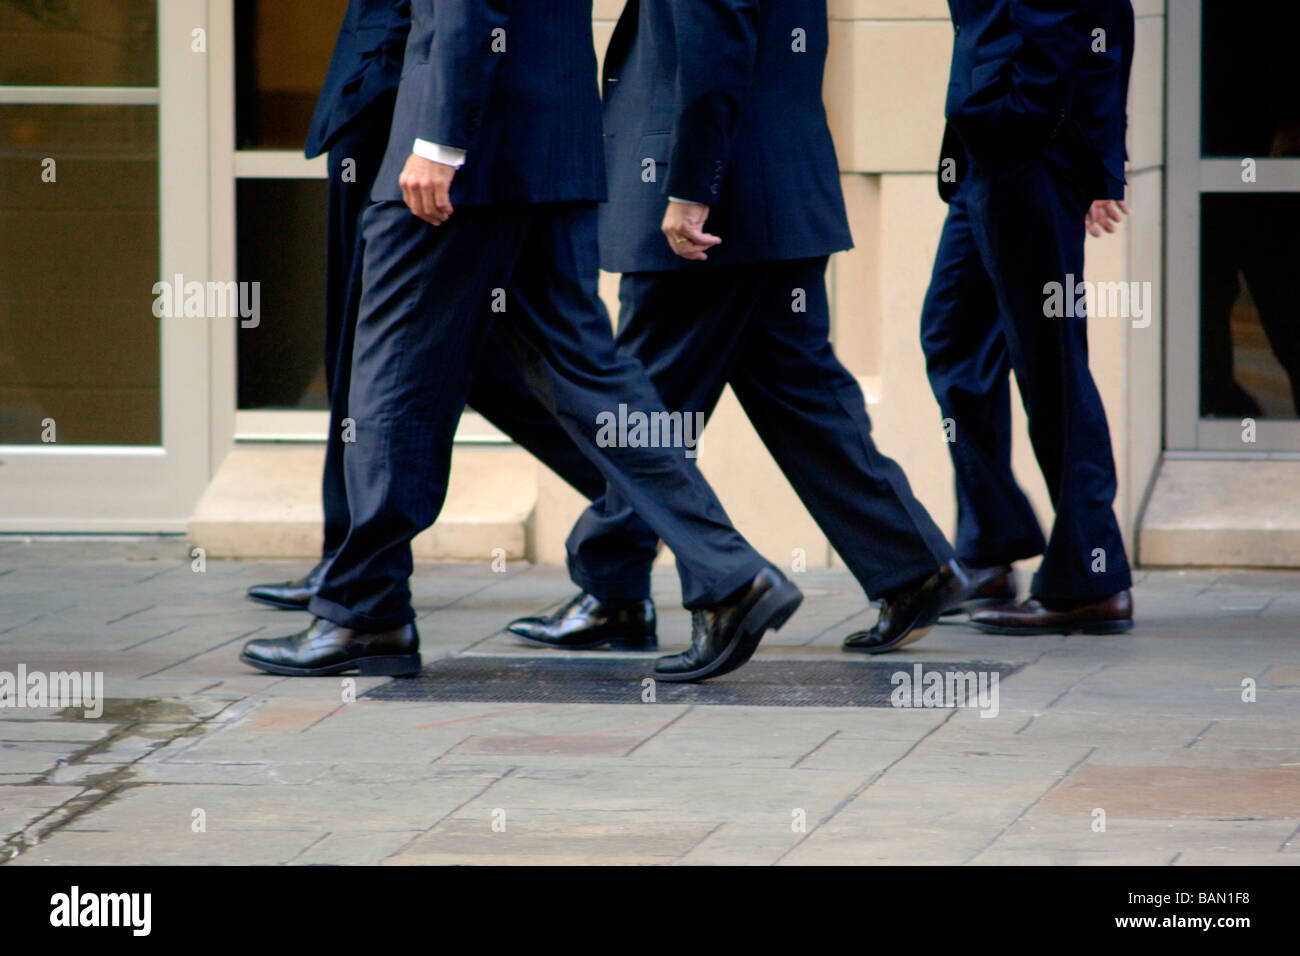 Business Männer/Banker in Business-Kleidung gehen in flottem Tempo auf einer Stadtstraße, als ein Team während eines nicht Schritt ist Stockfoto